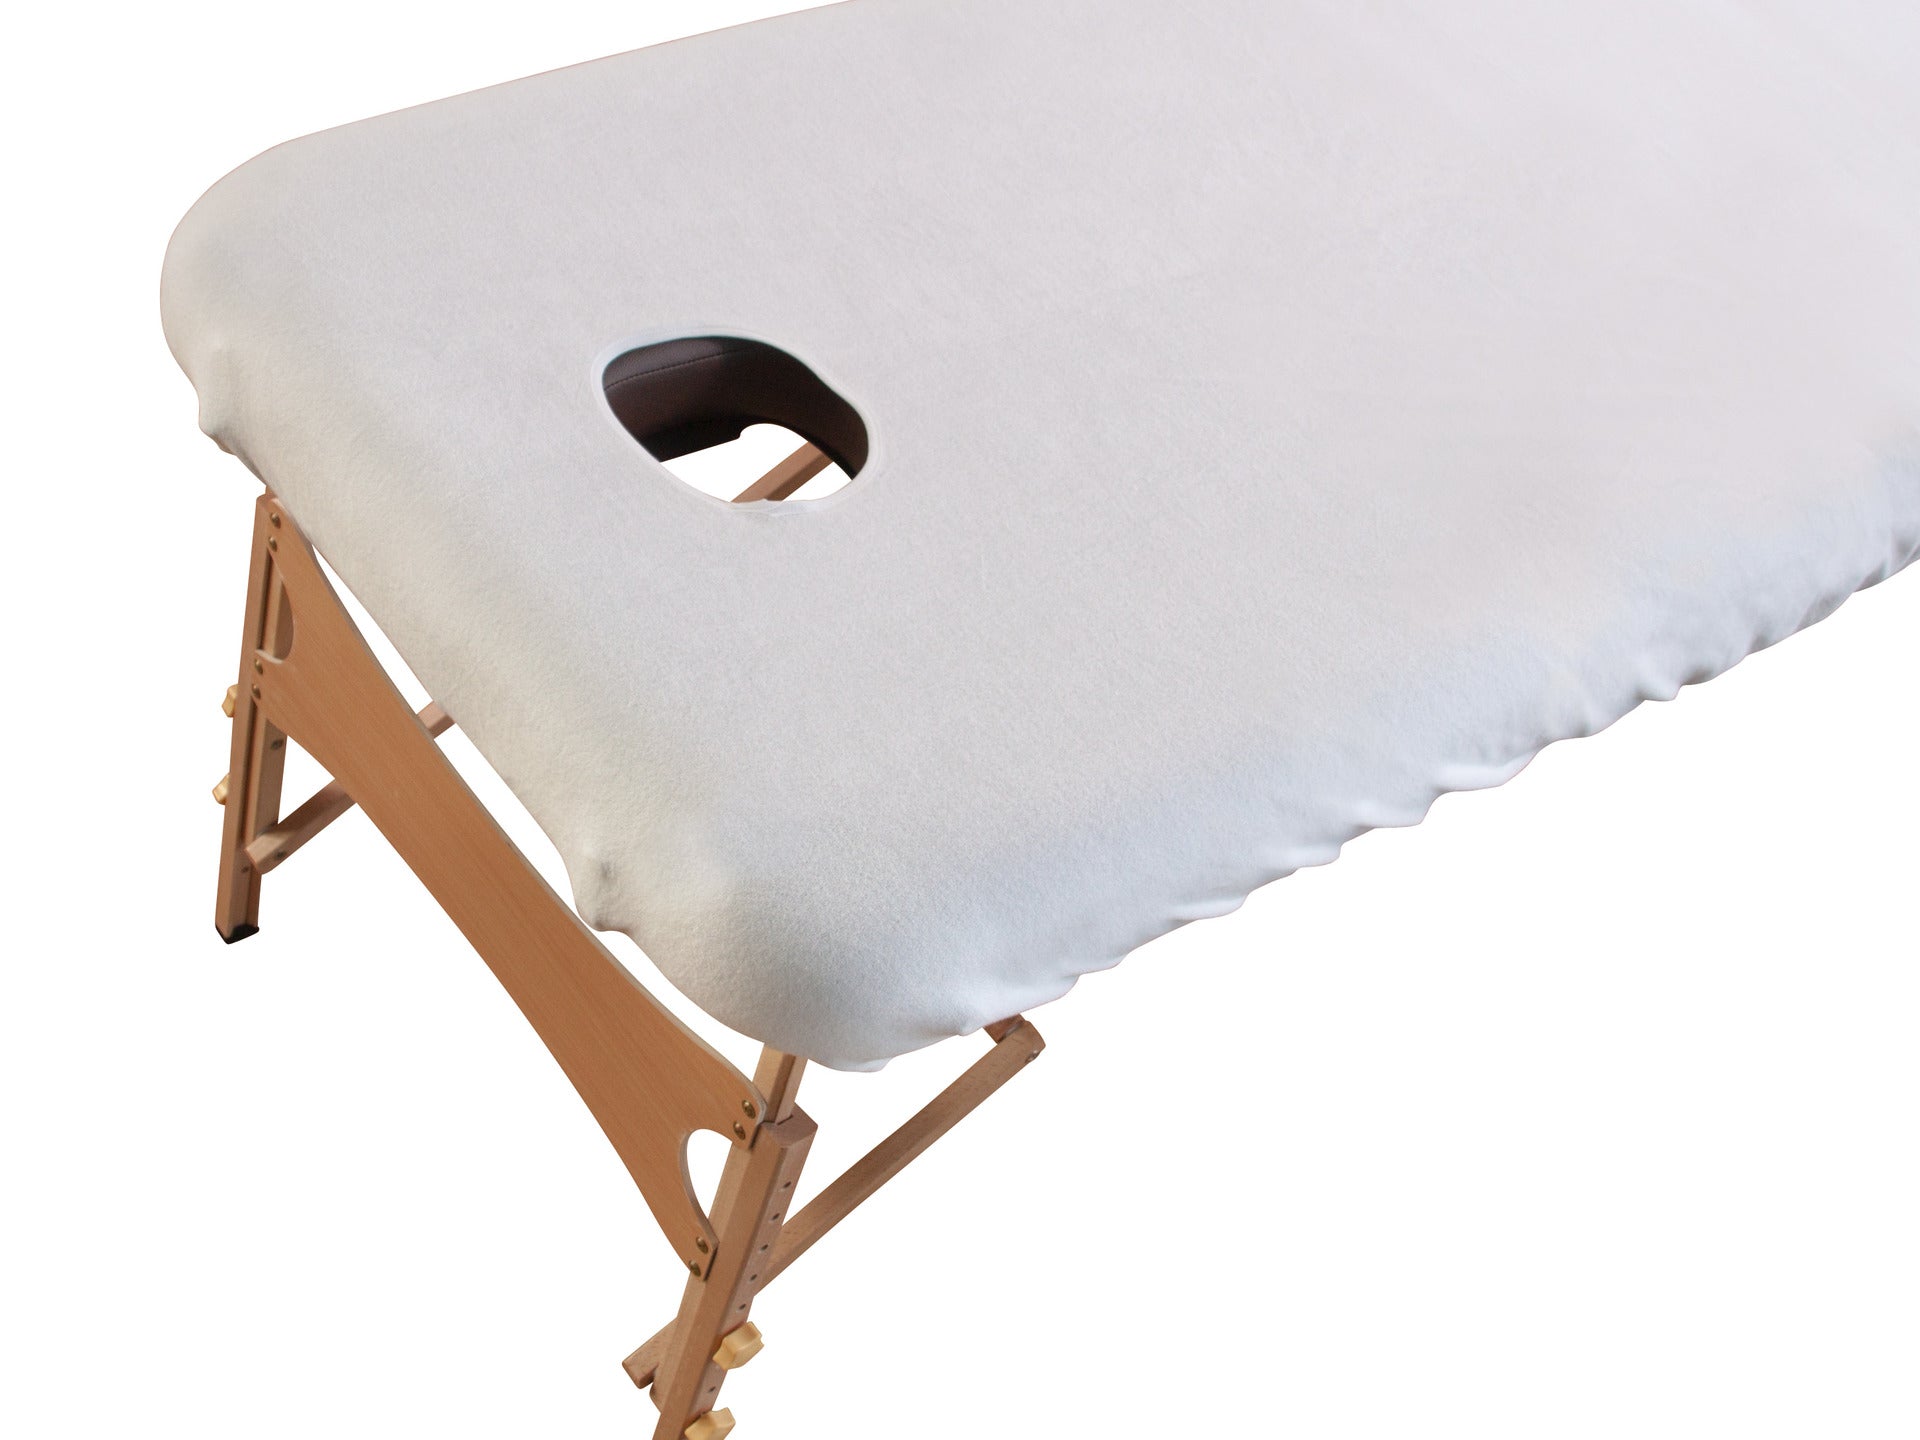 Housse en tissu éponge pour table de massage mobile - Ruck